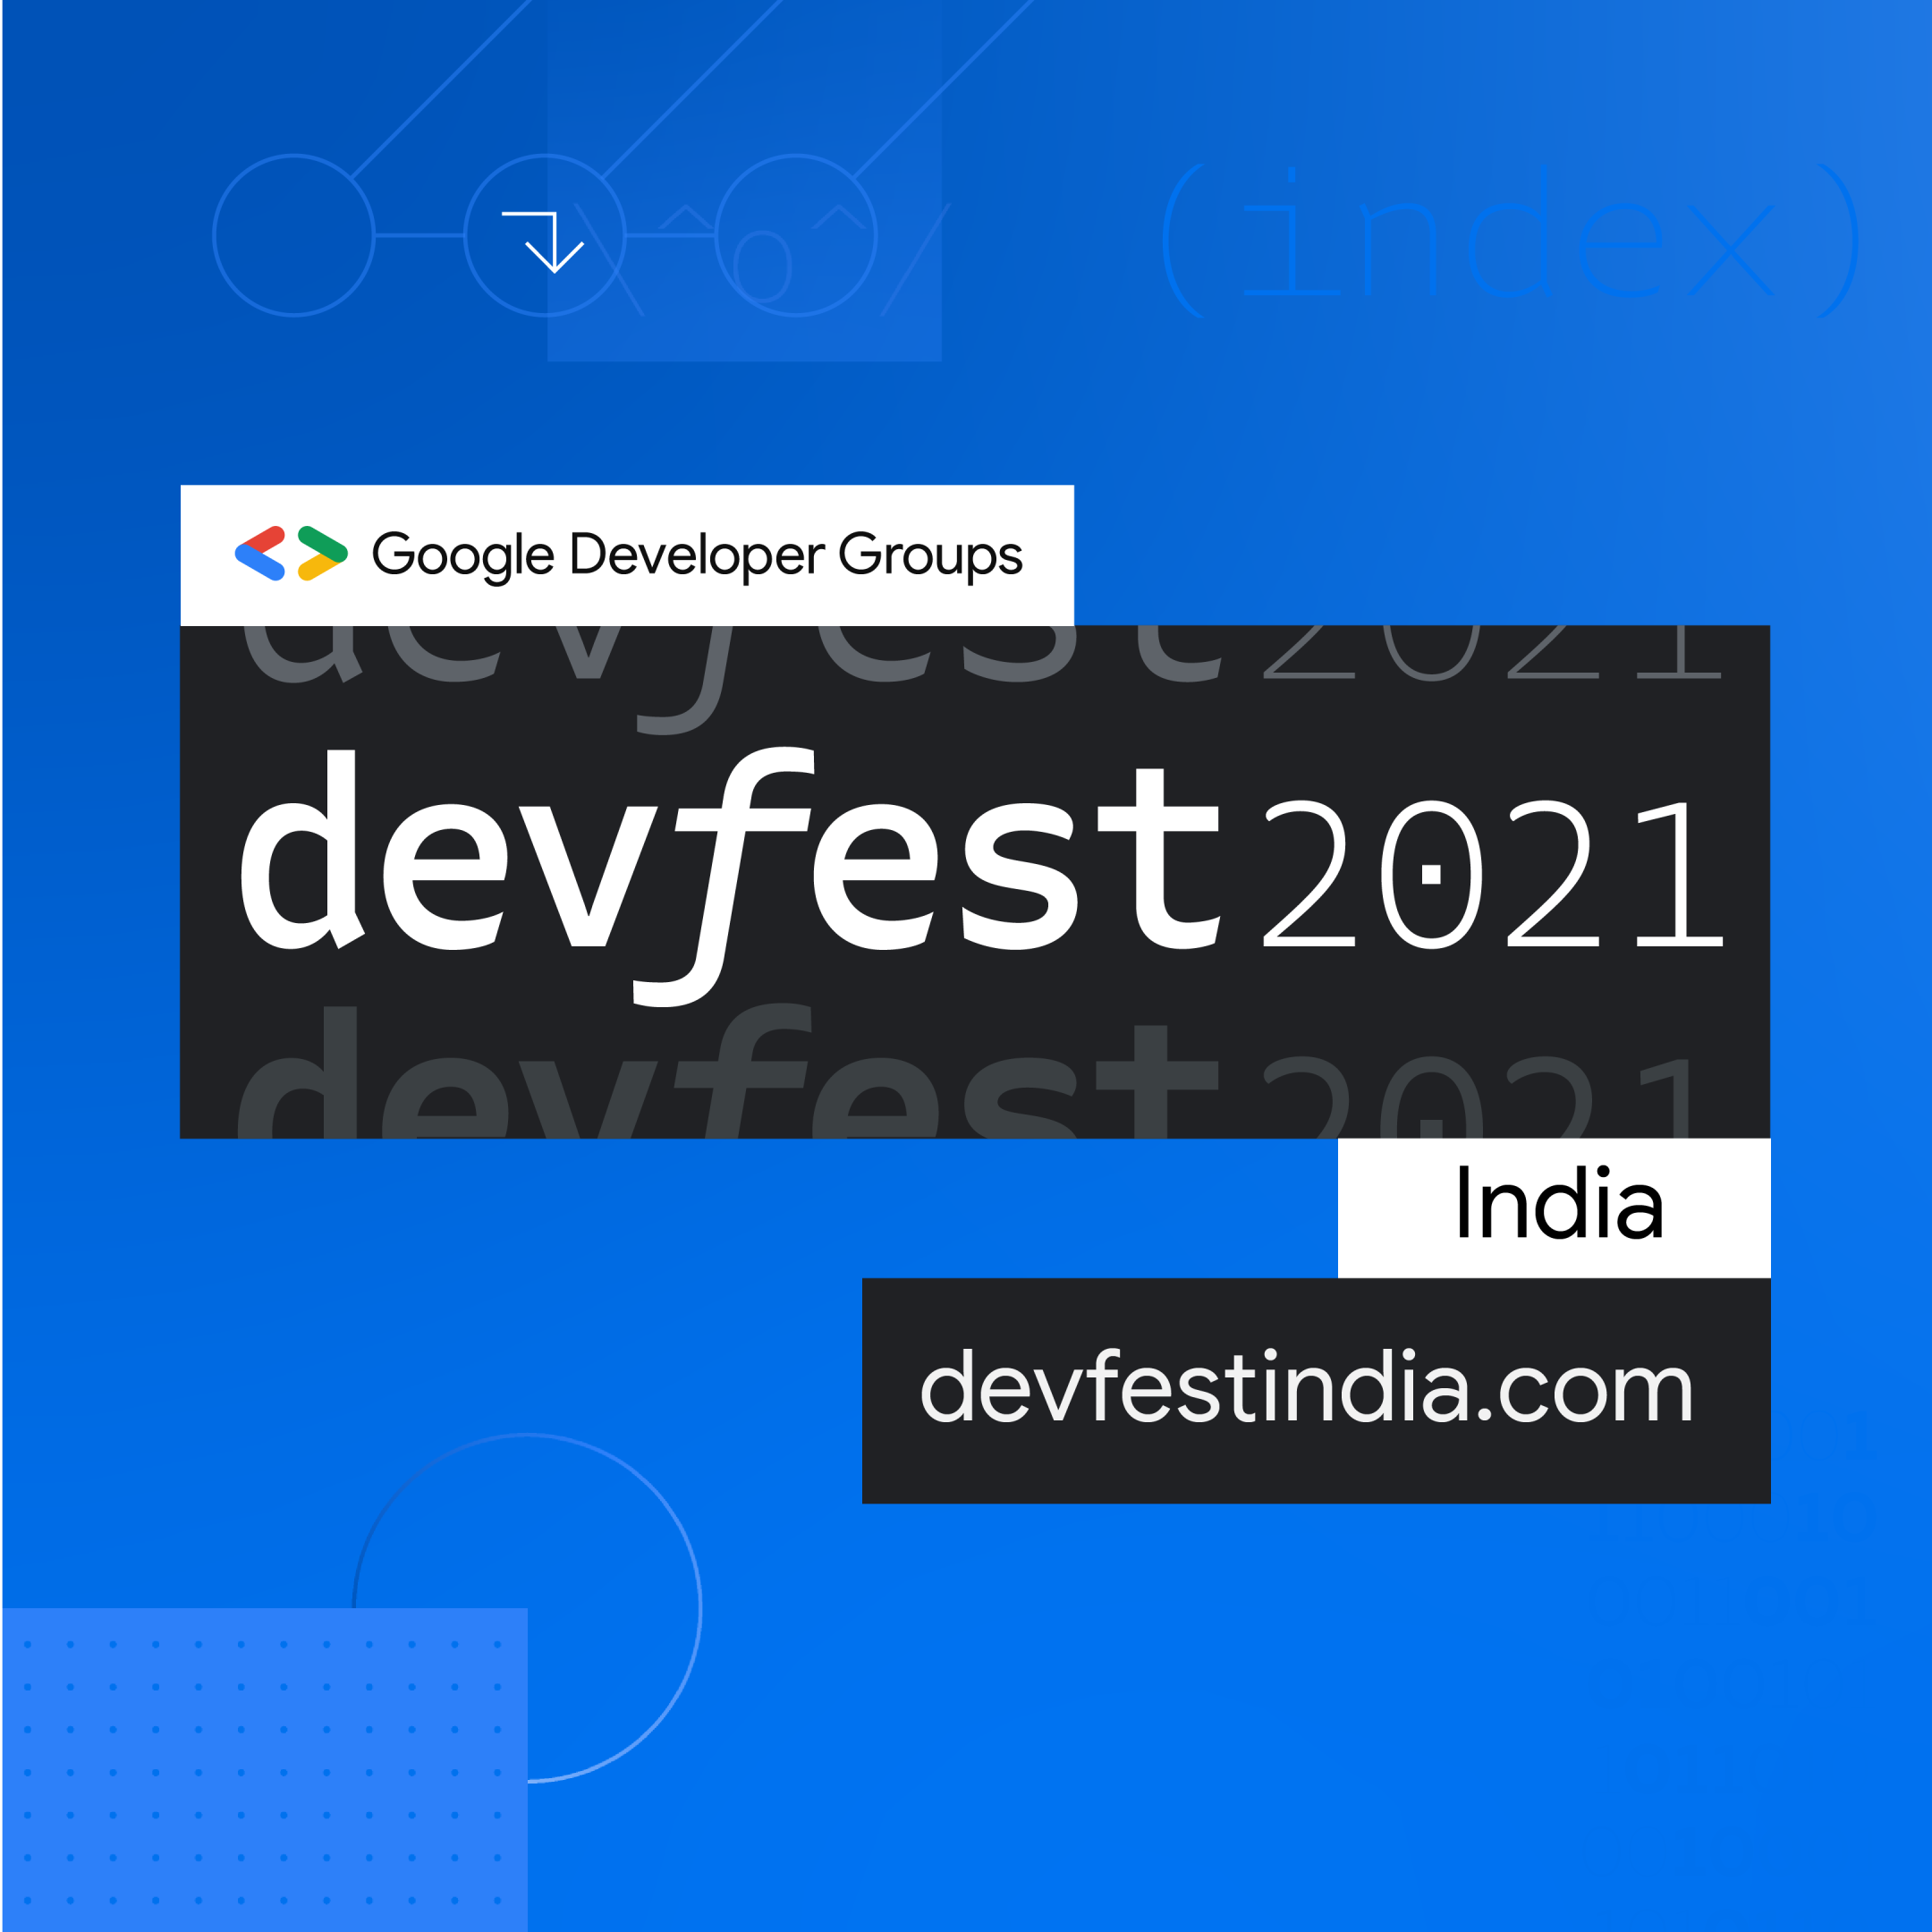 DevFest India 2021